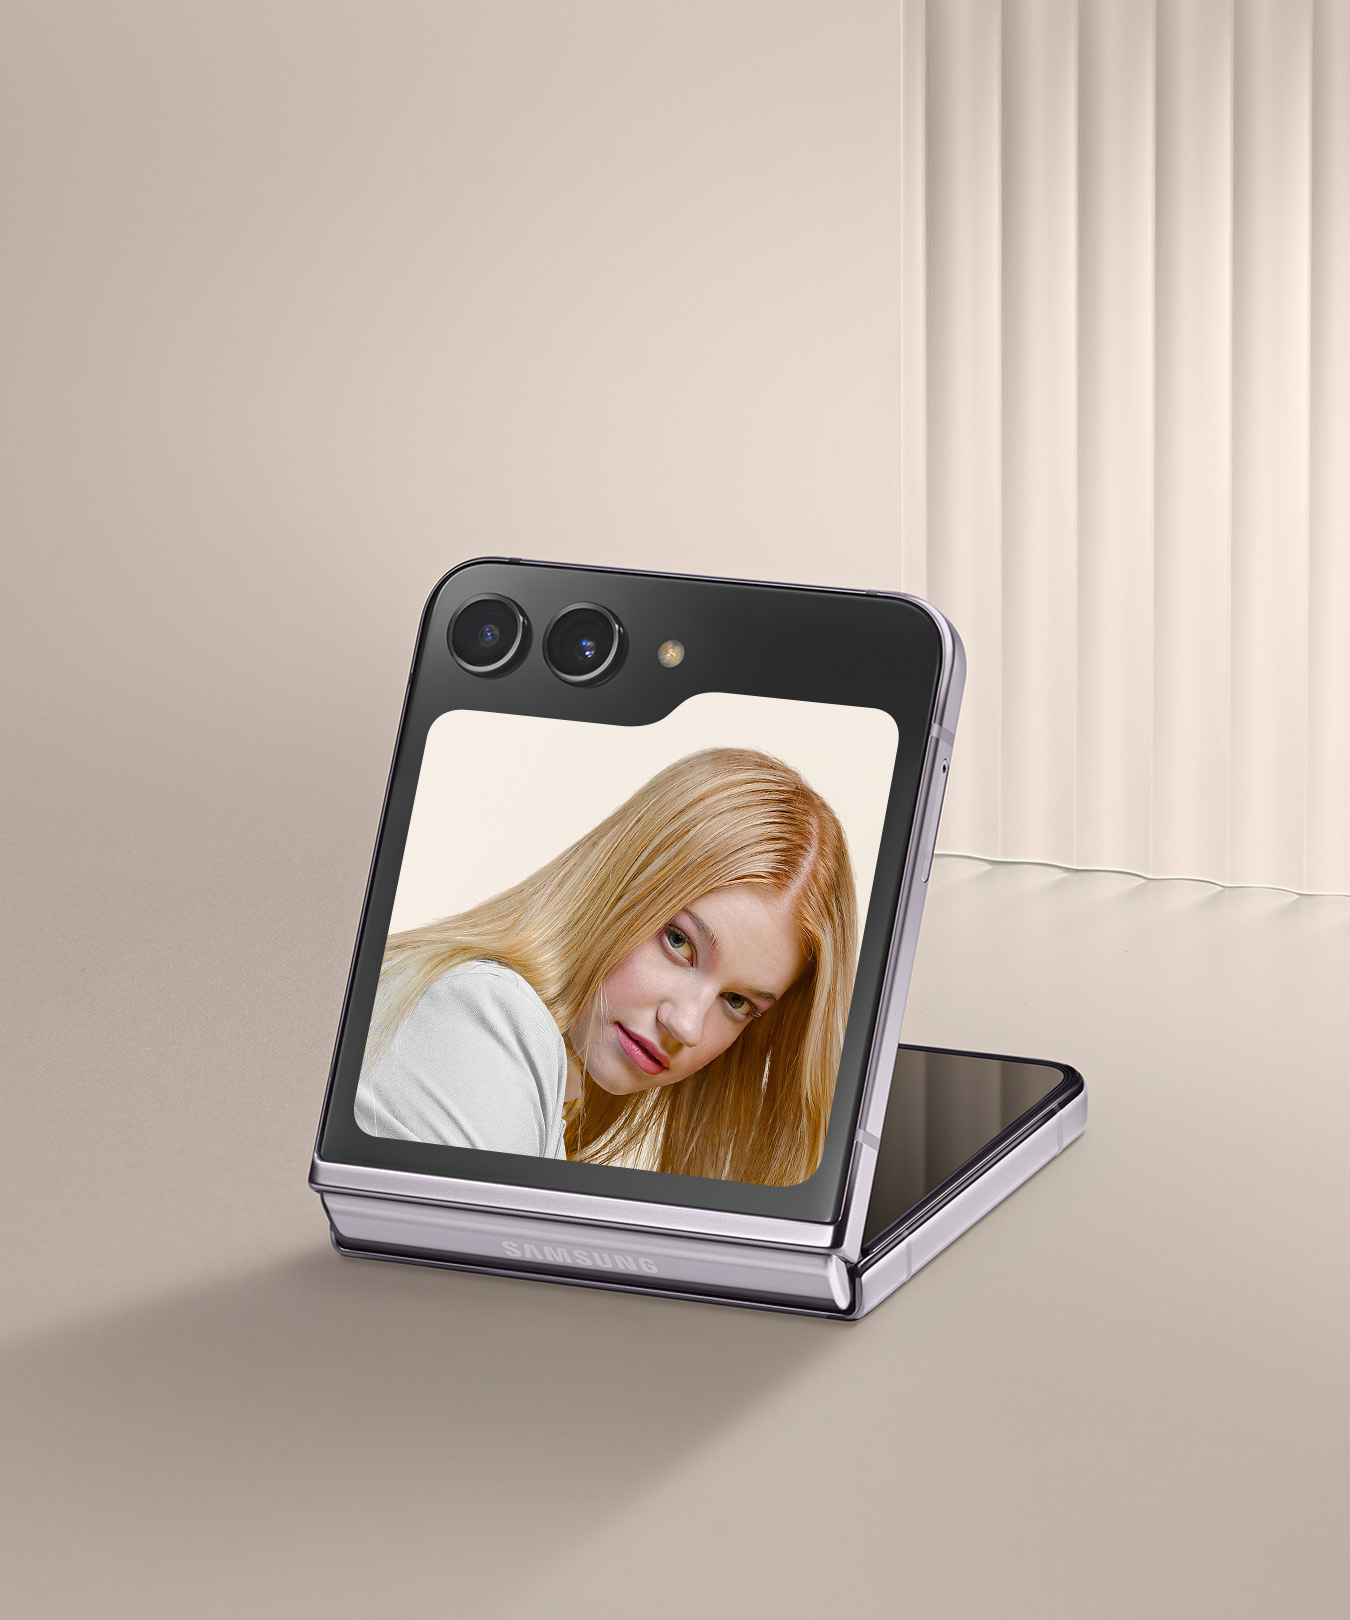 갤럭시 Z 플립5의 플렉스 윈도우로 스마트폰을 접은 상태에서 셀피를 촬영하는 이미지입니다.